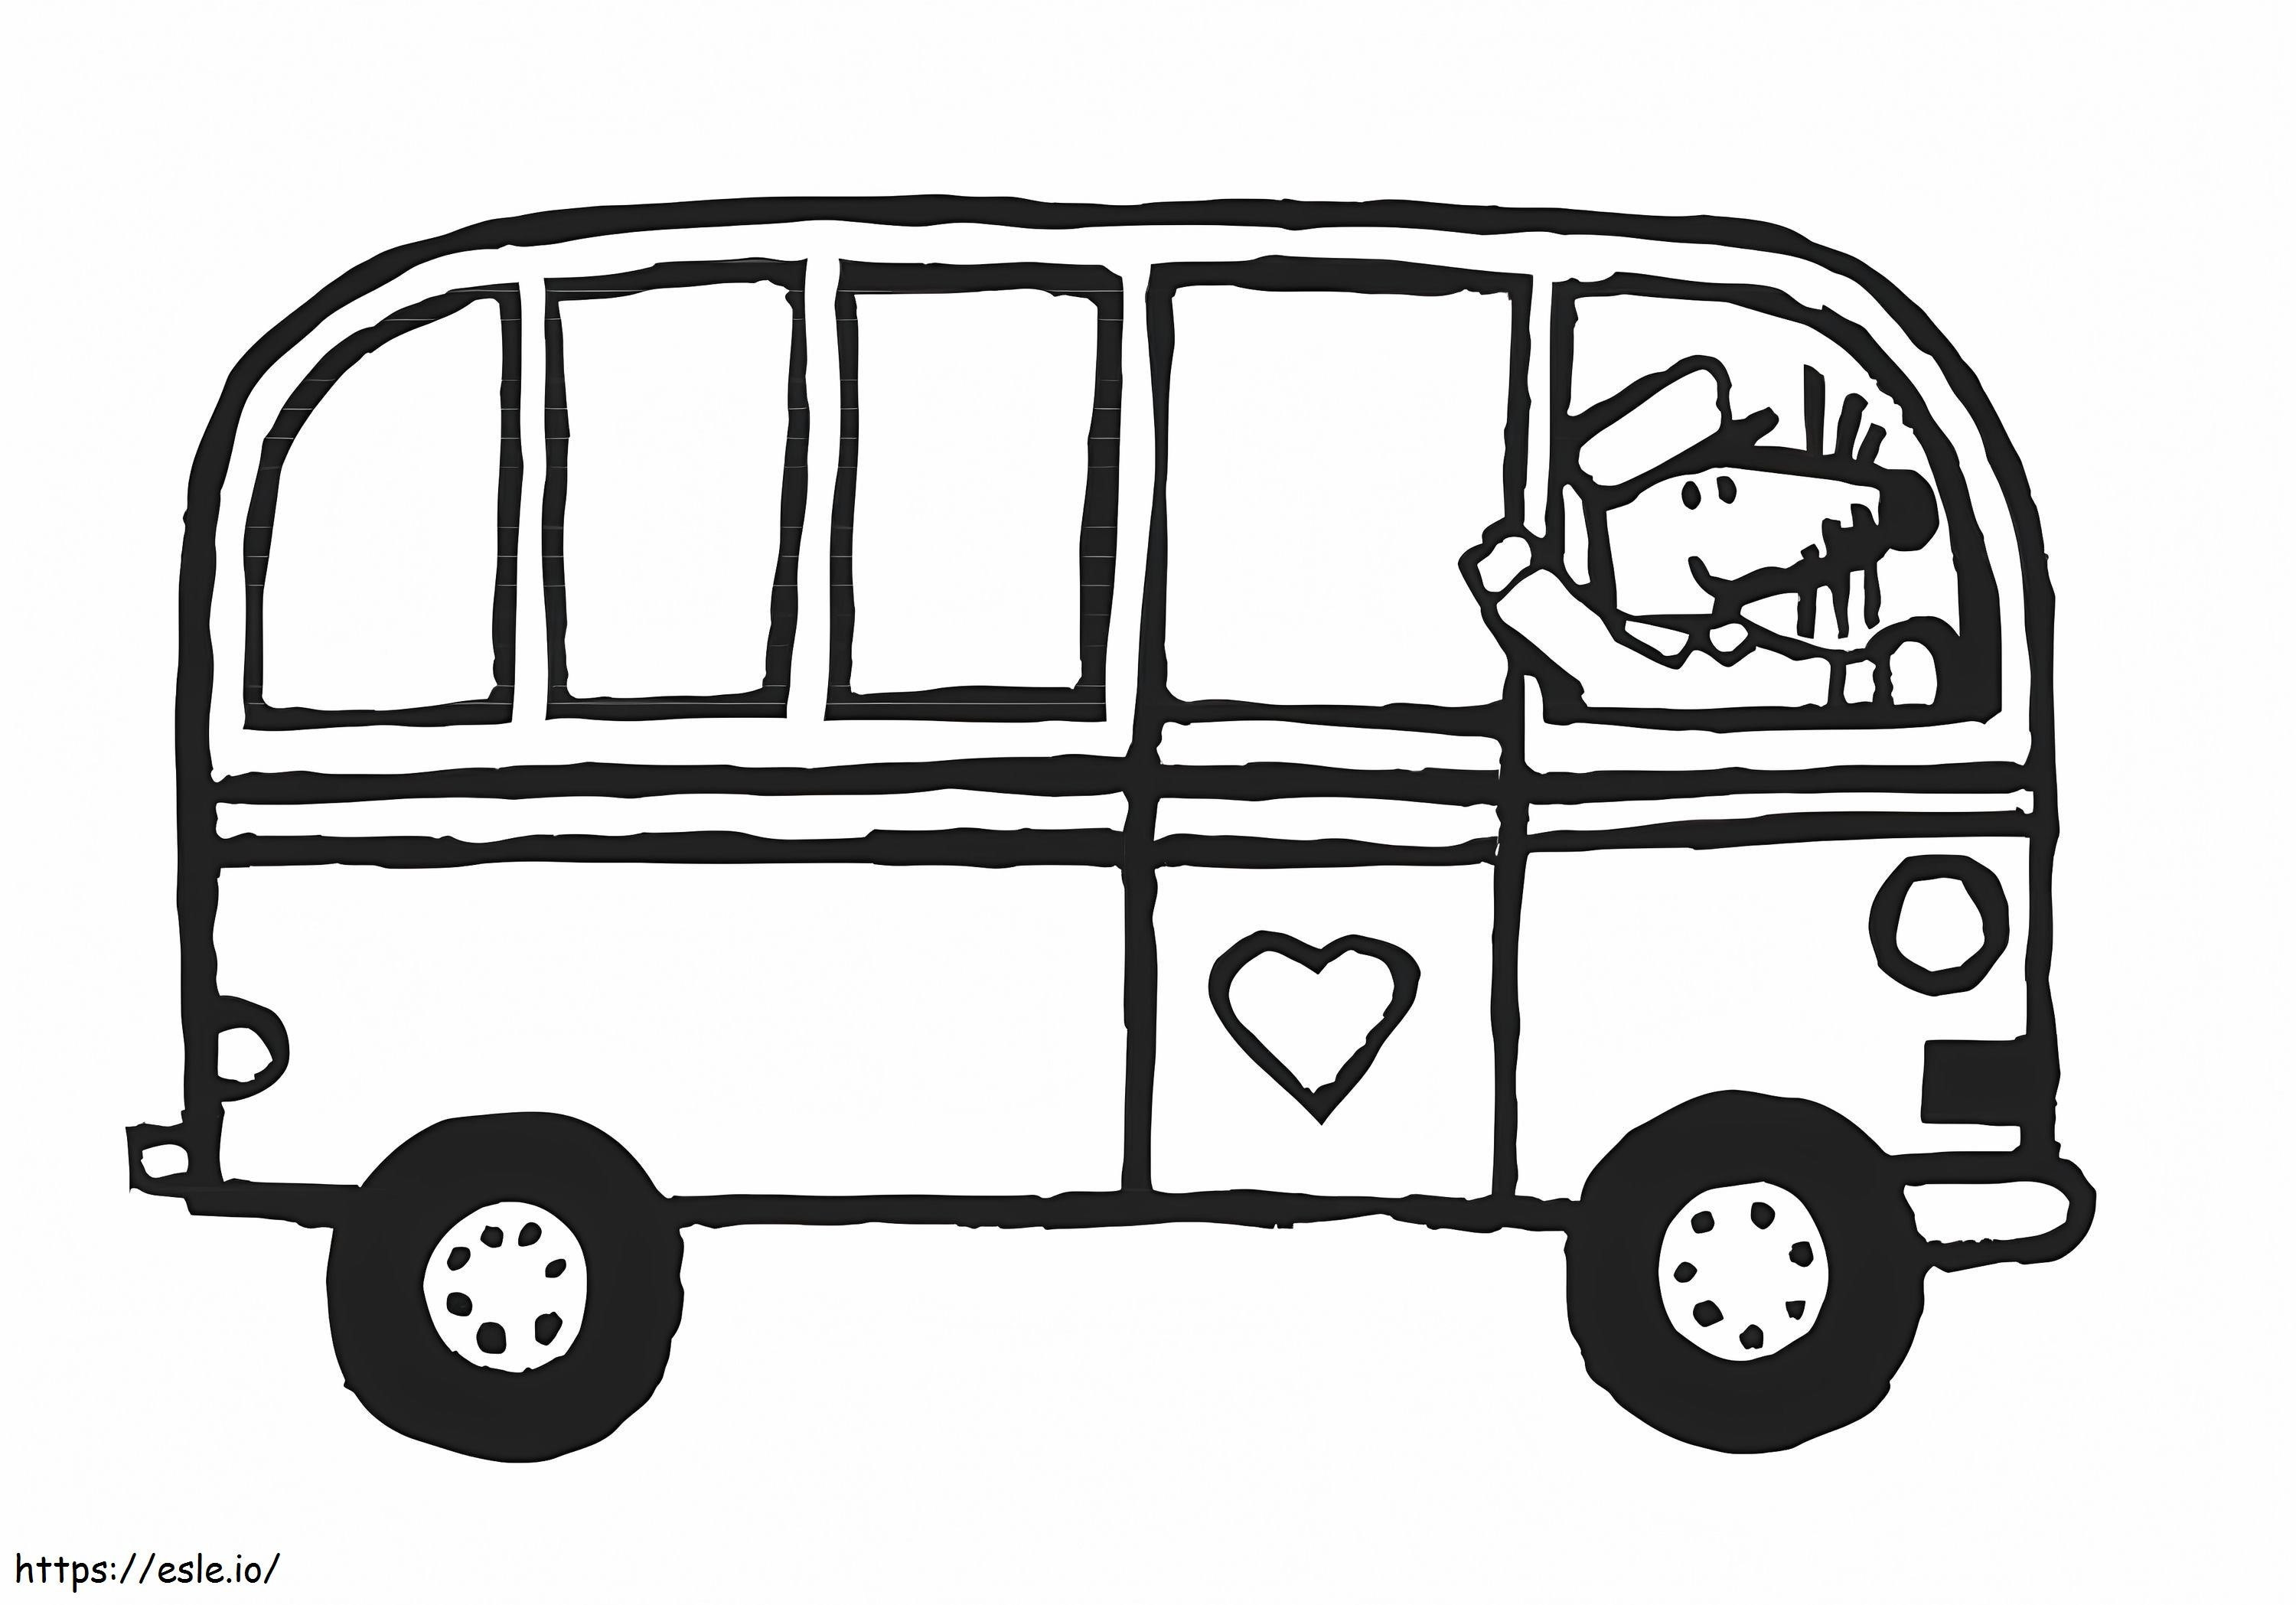 Otobüste Maisy boyama